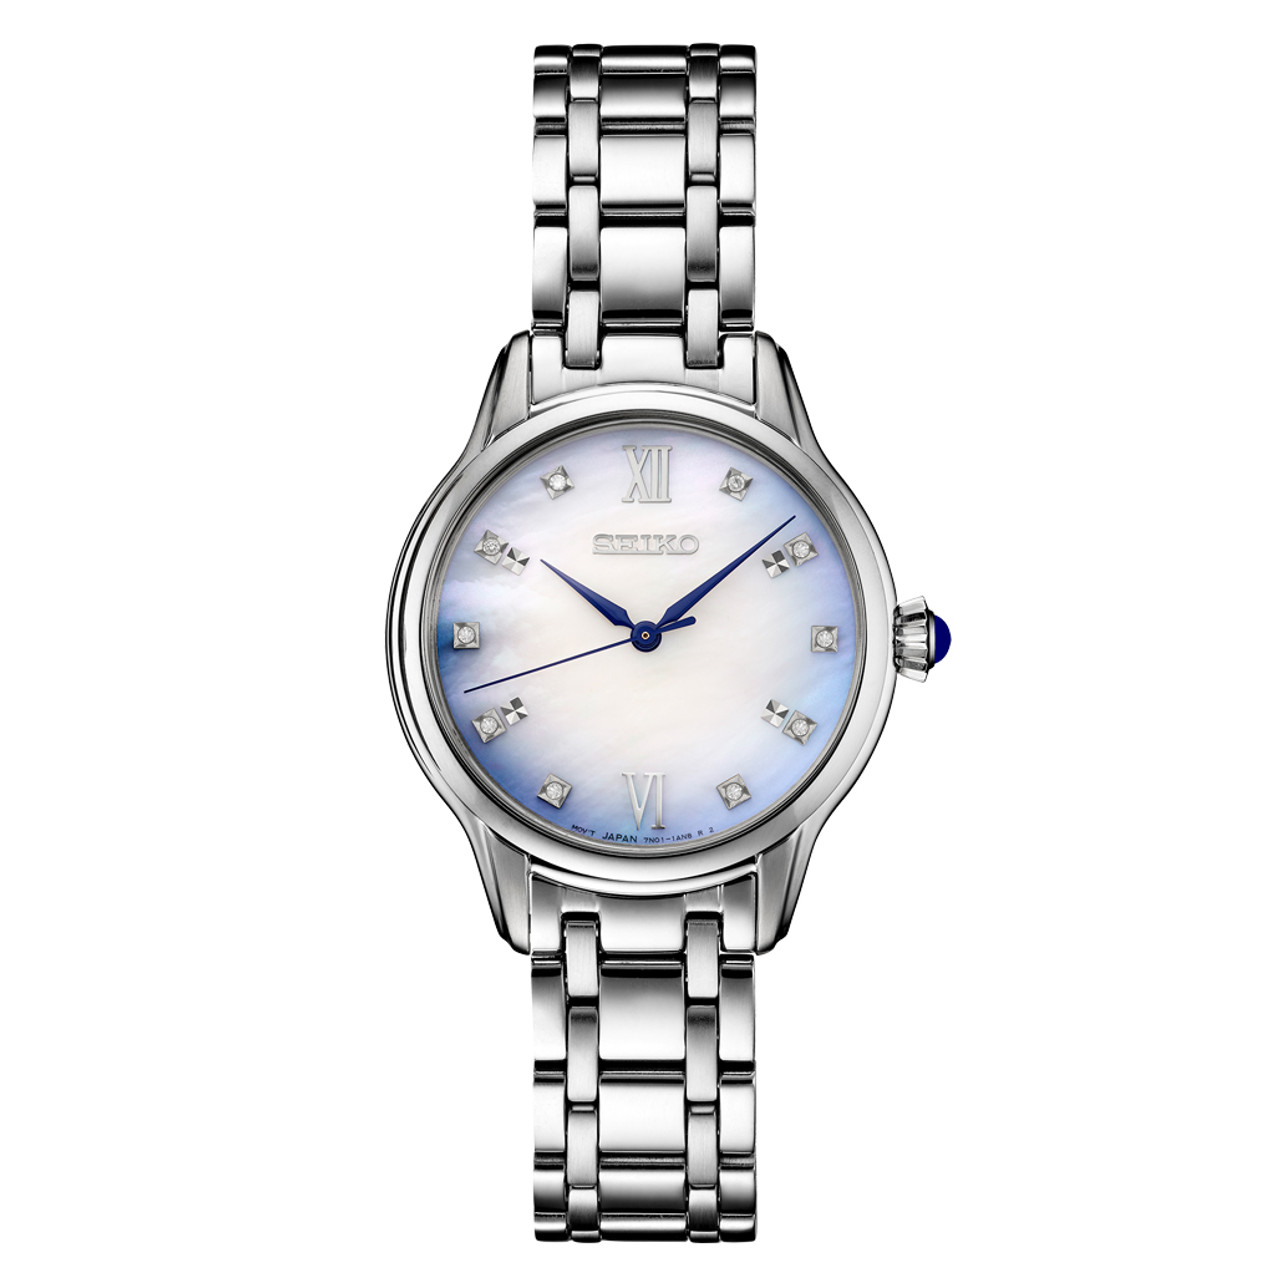 Seiko Diamonds Blue of Dress Watch with Sapphire Crystal #SRZ539